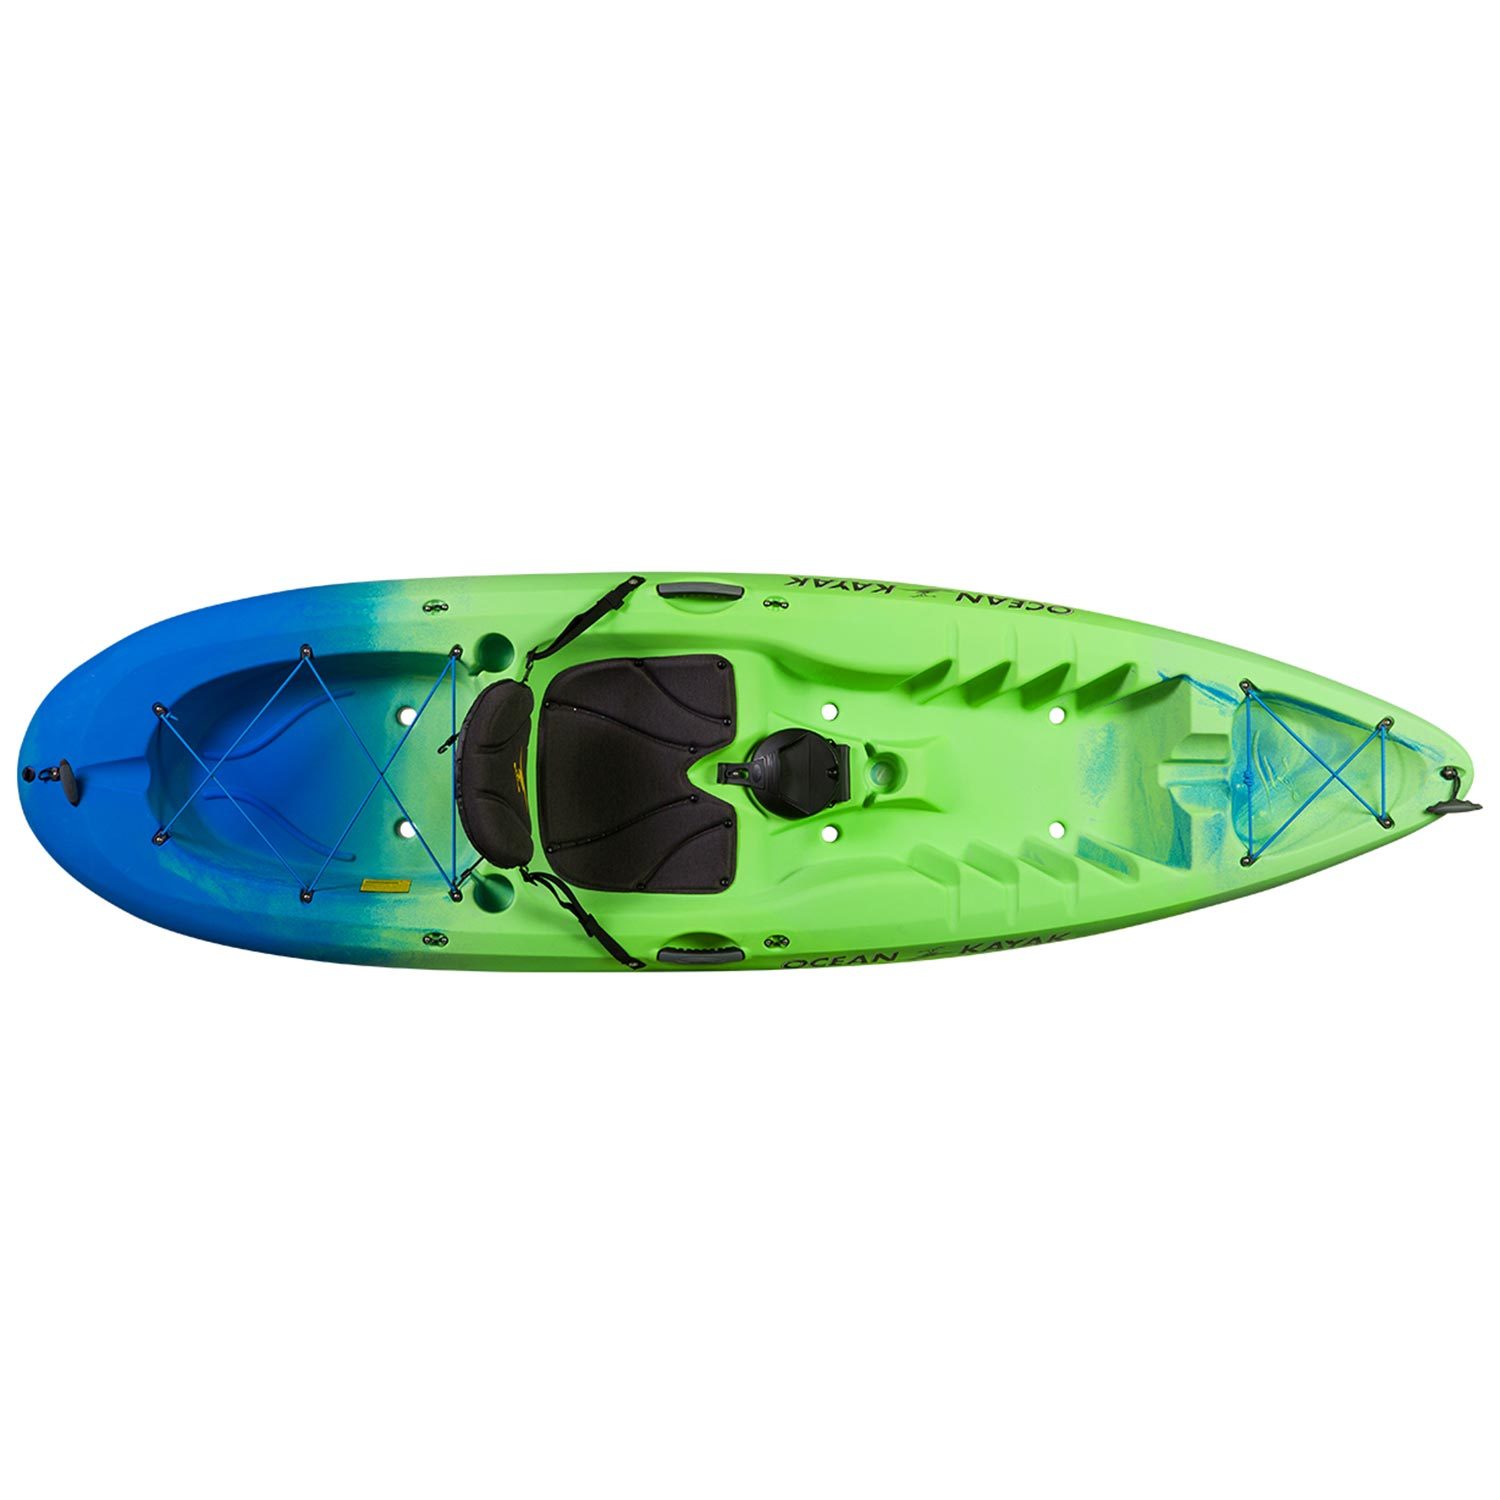 Buy Malibu Kayaks Trolling Motor Mount - Kayak Creek